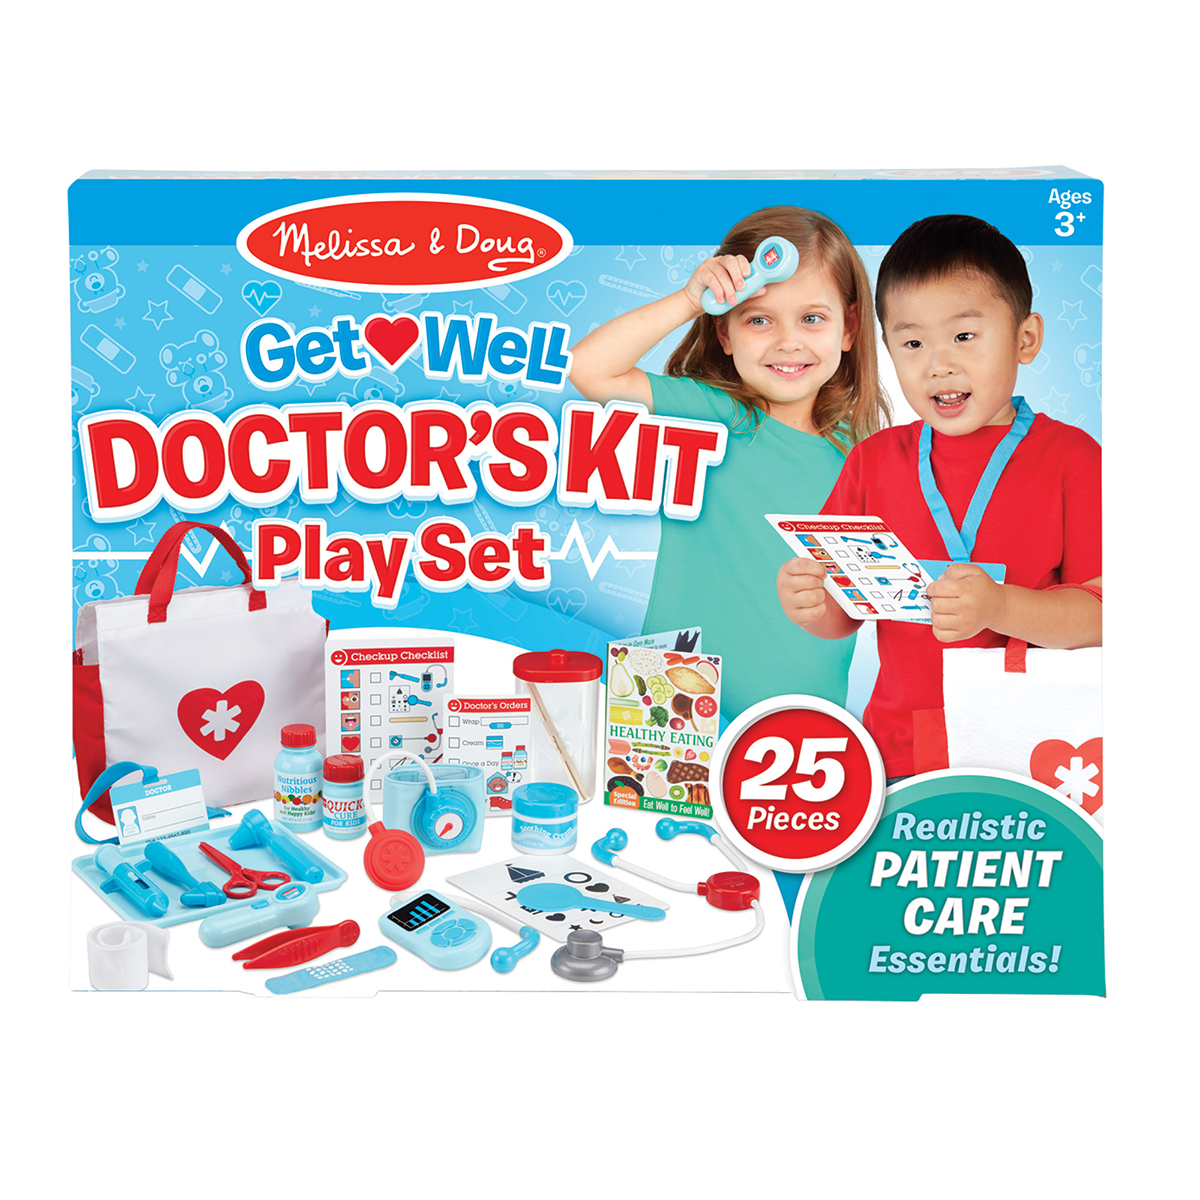 Melissa & Doug(R) Get Well Doctor's Kit Play Set